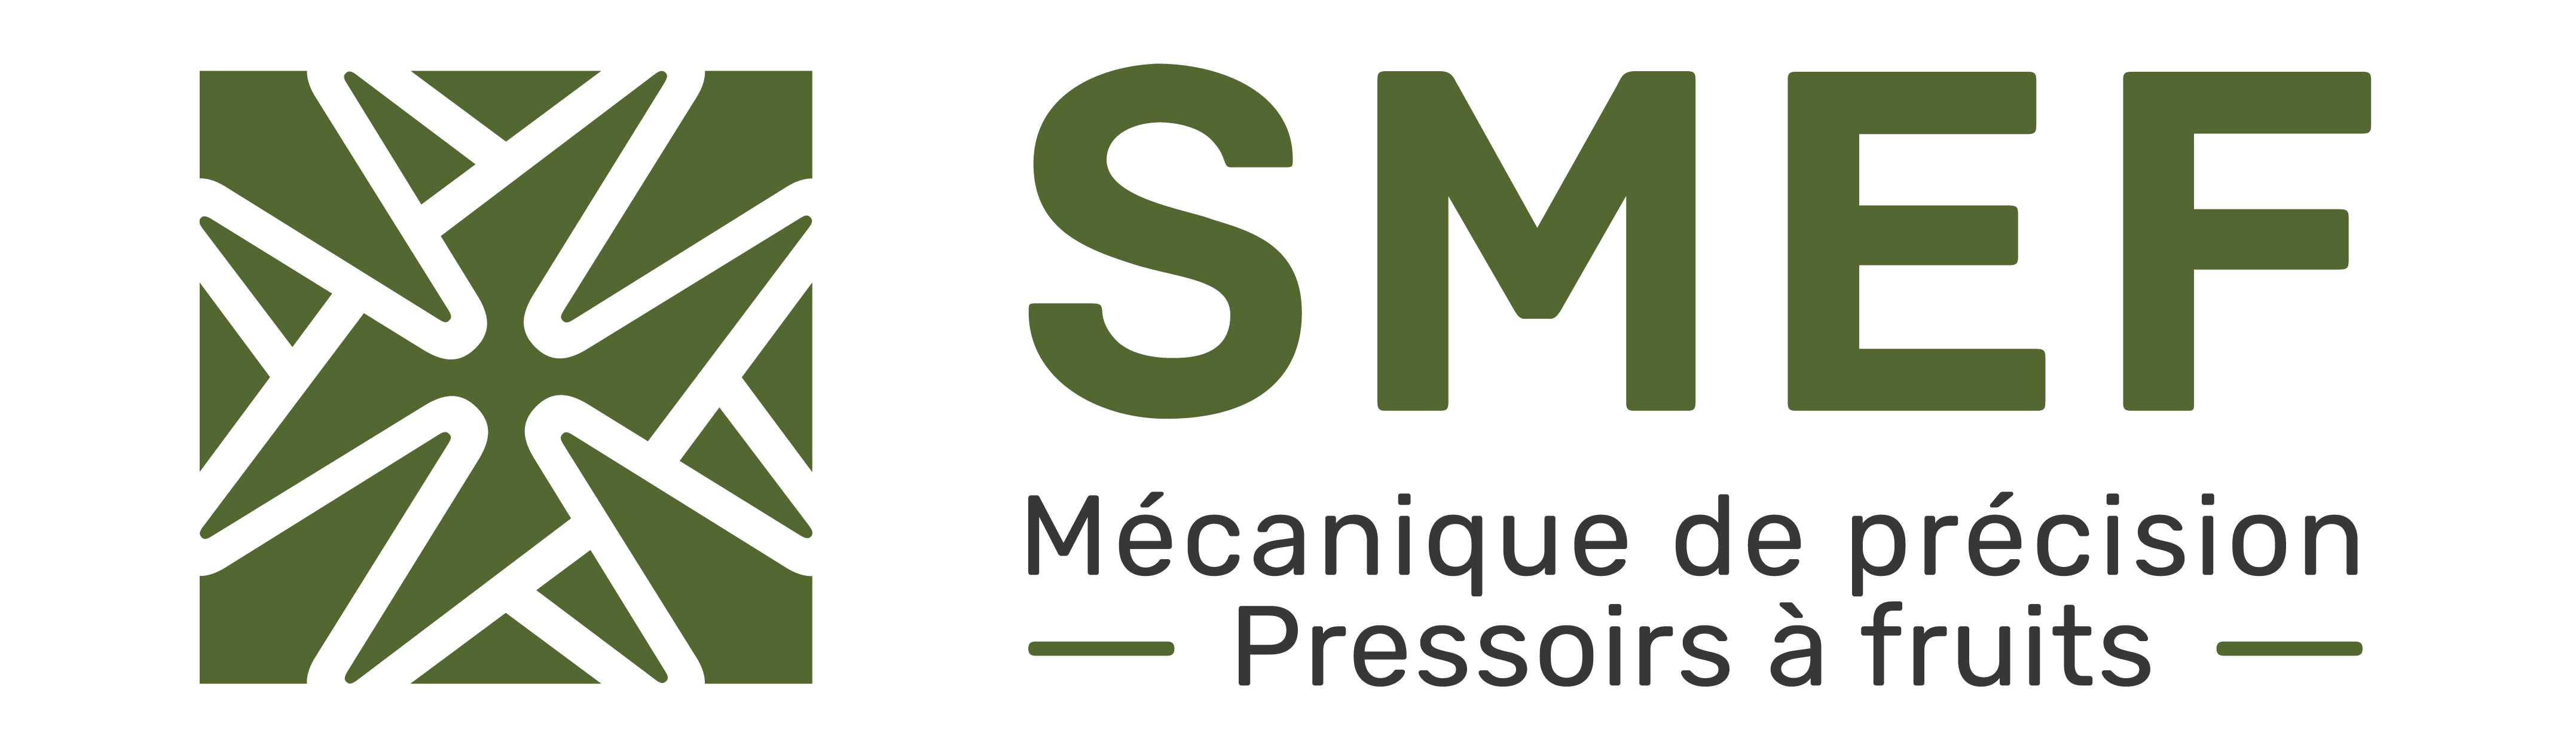 logo SMEF